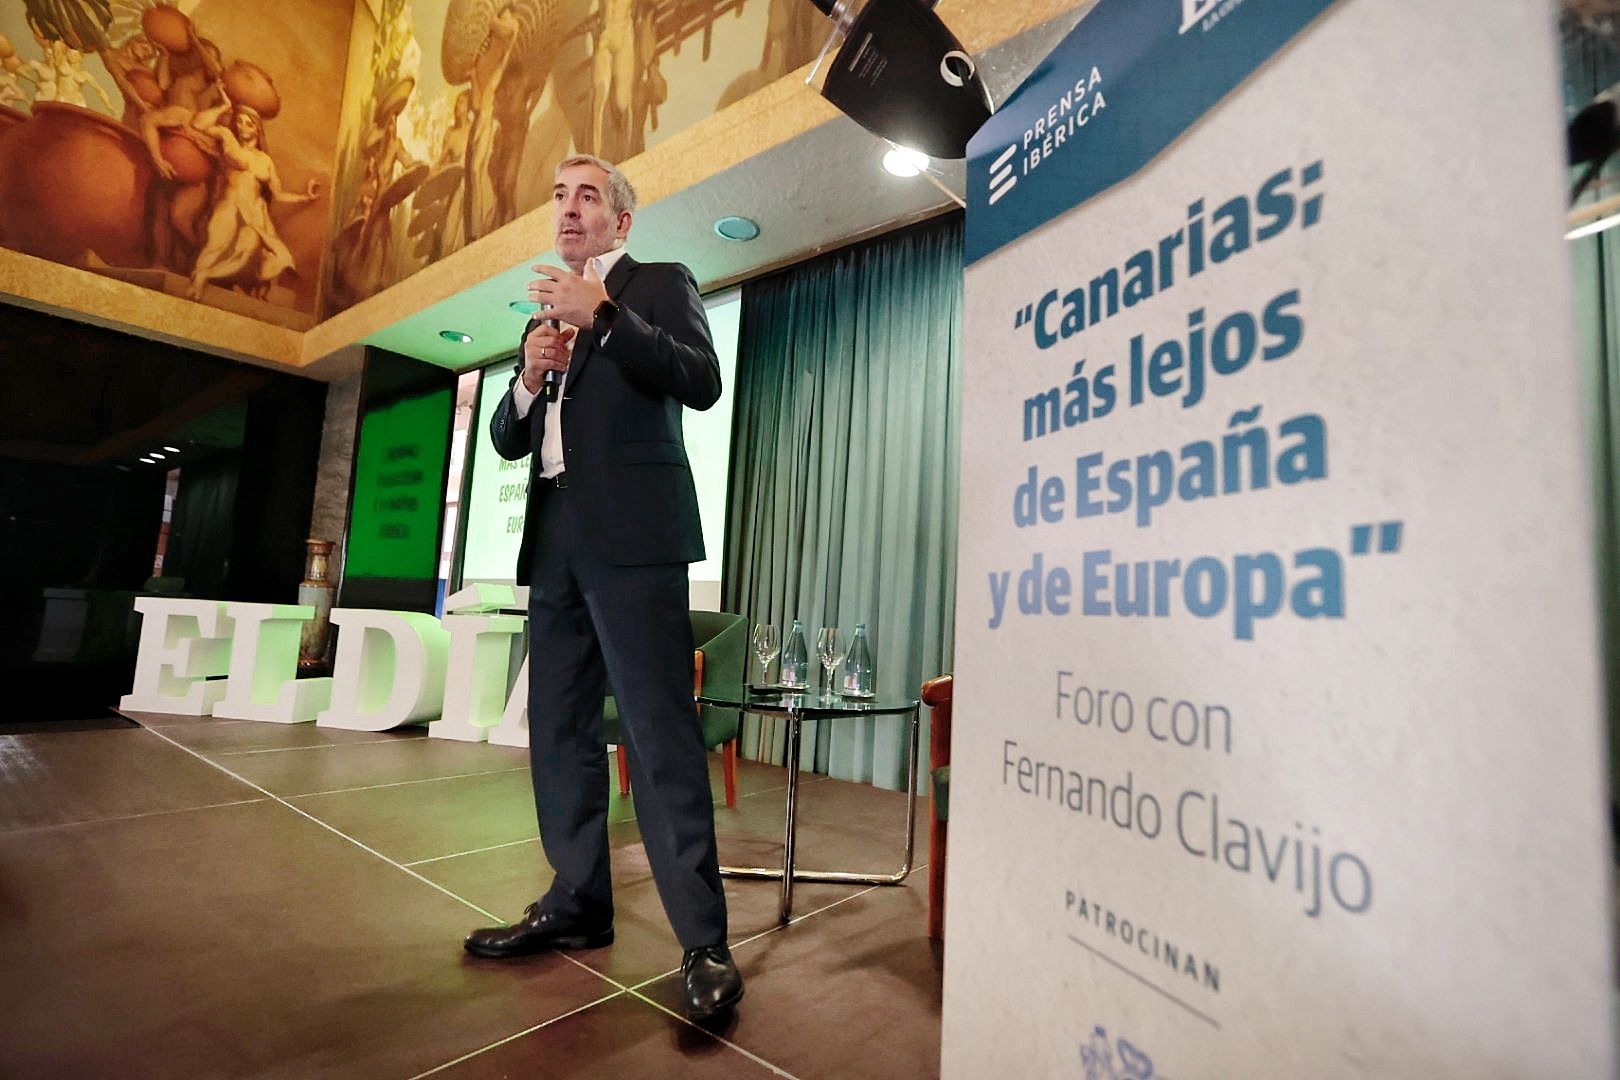 Fernando Clavijo en el Foro de El Día 'Canarias; más lejos de España y Europa'